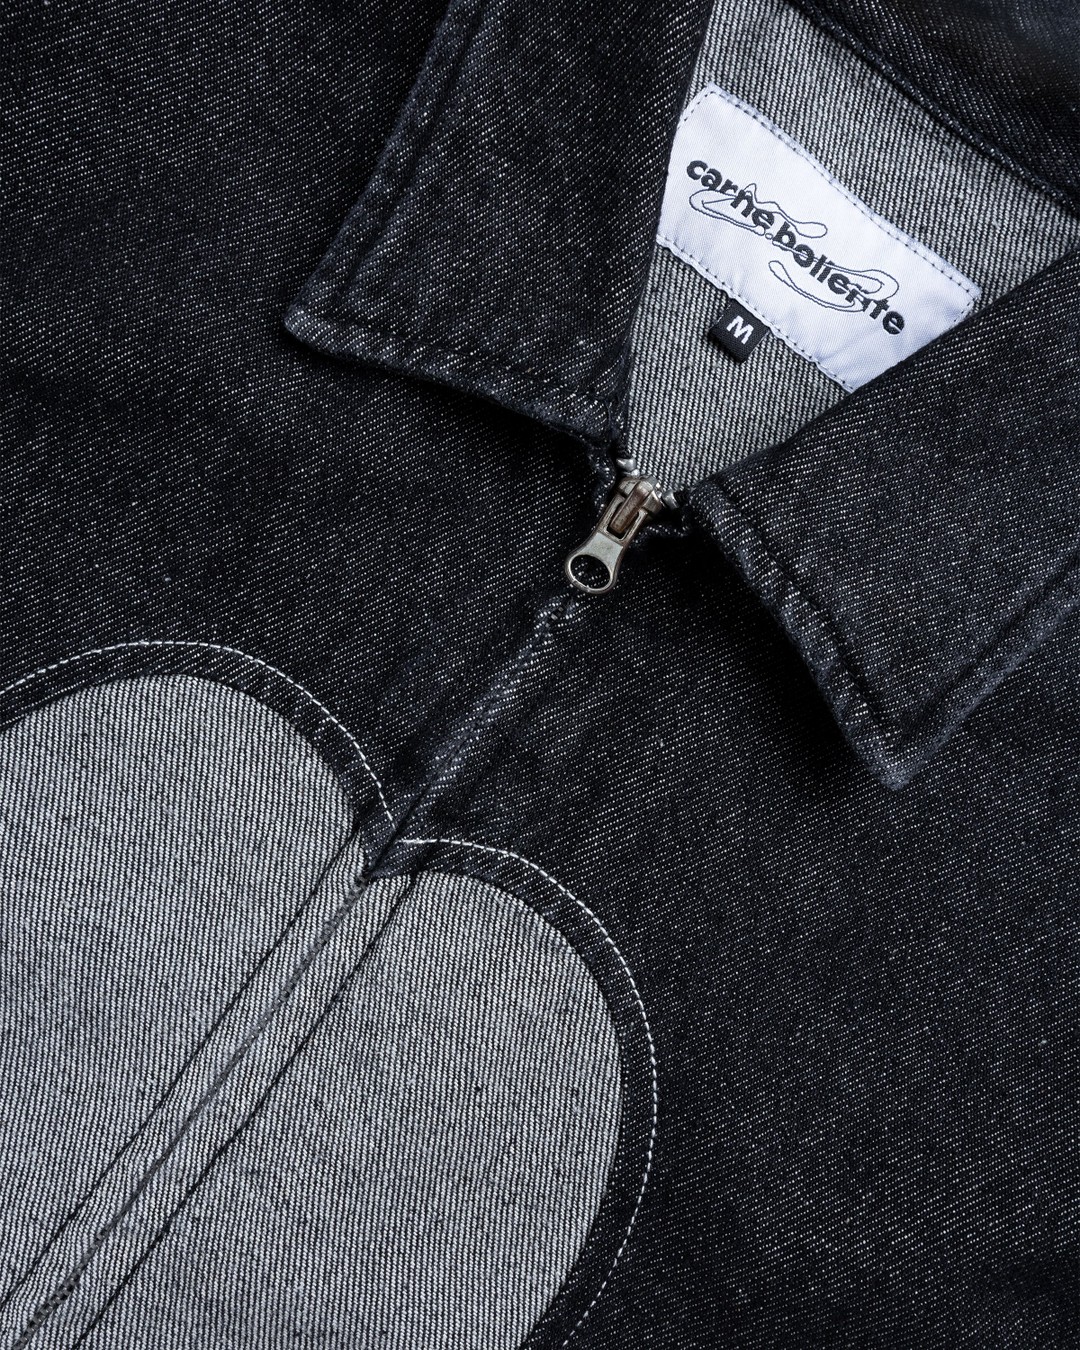 Carne Bollente – Heart Slice Jacket Washed Black - Outerwear - Black - Image 2